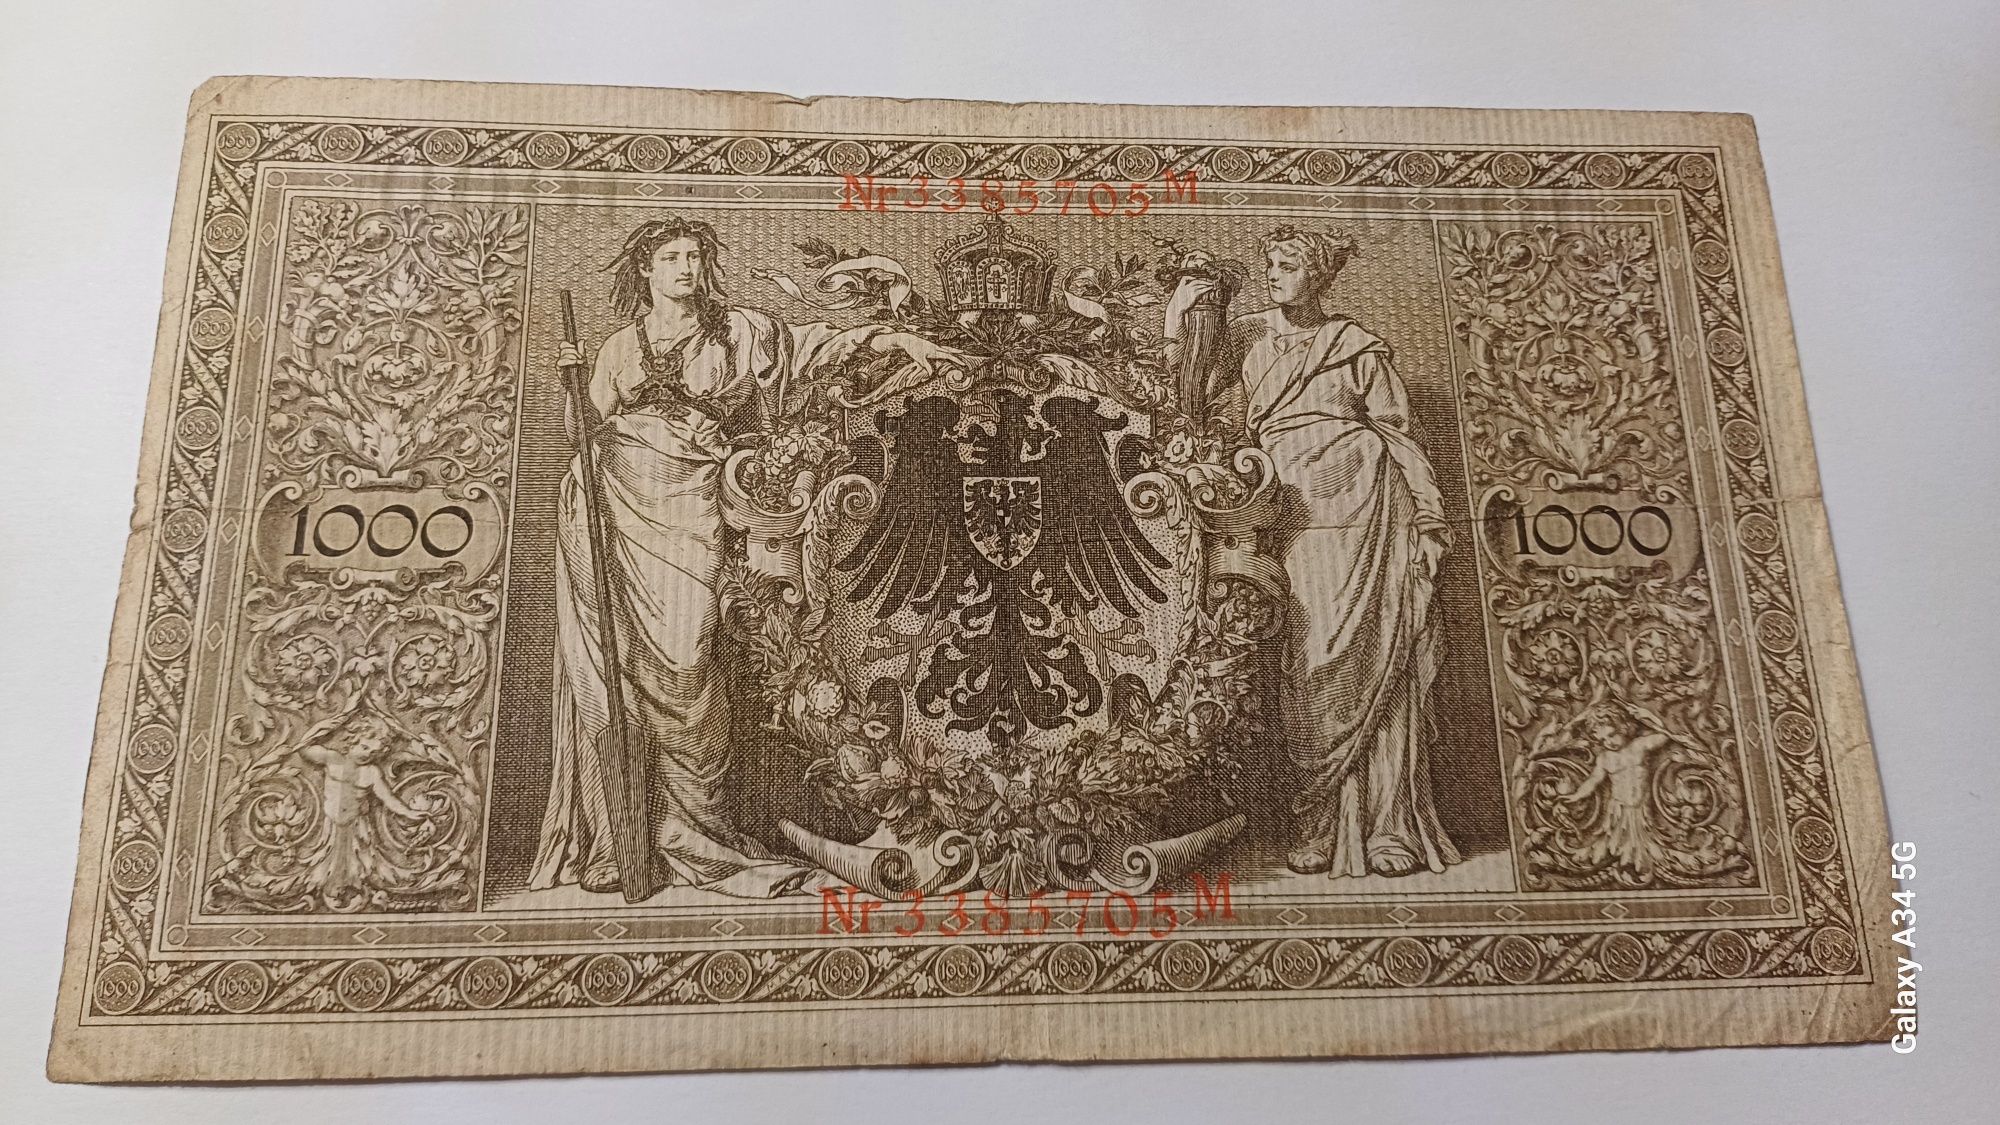 PROMOÇÃO--1000 marks 1910 Império Alemão ORIGINAL Alemanha